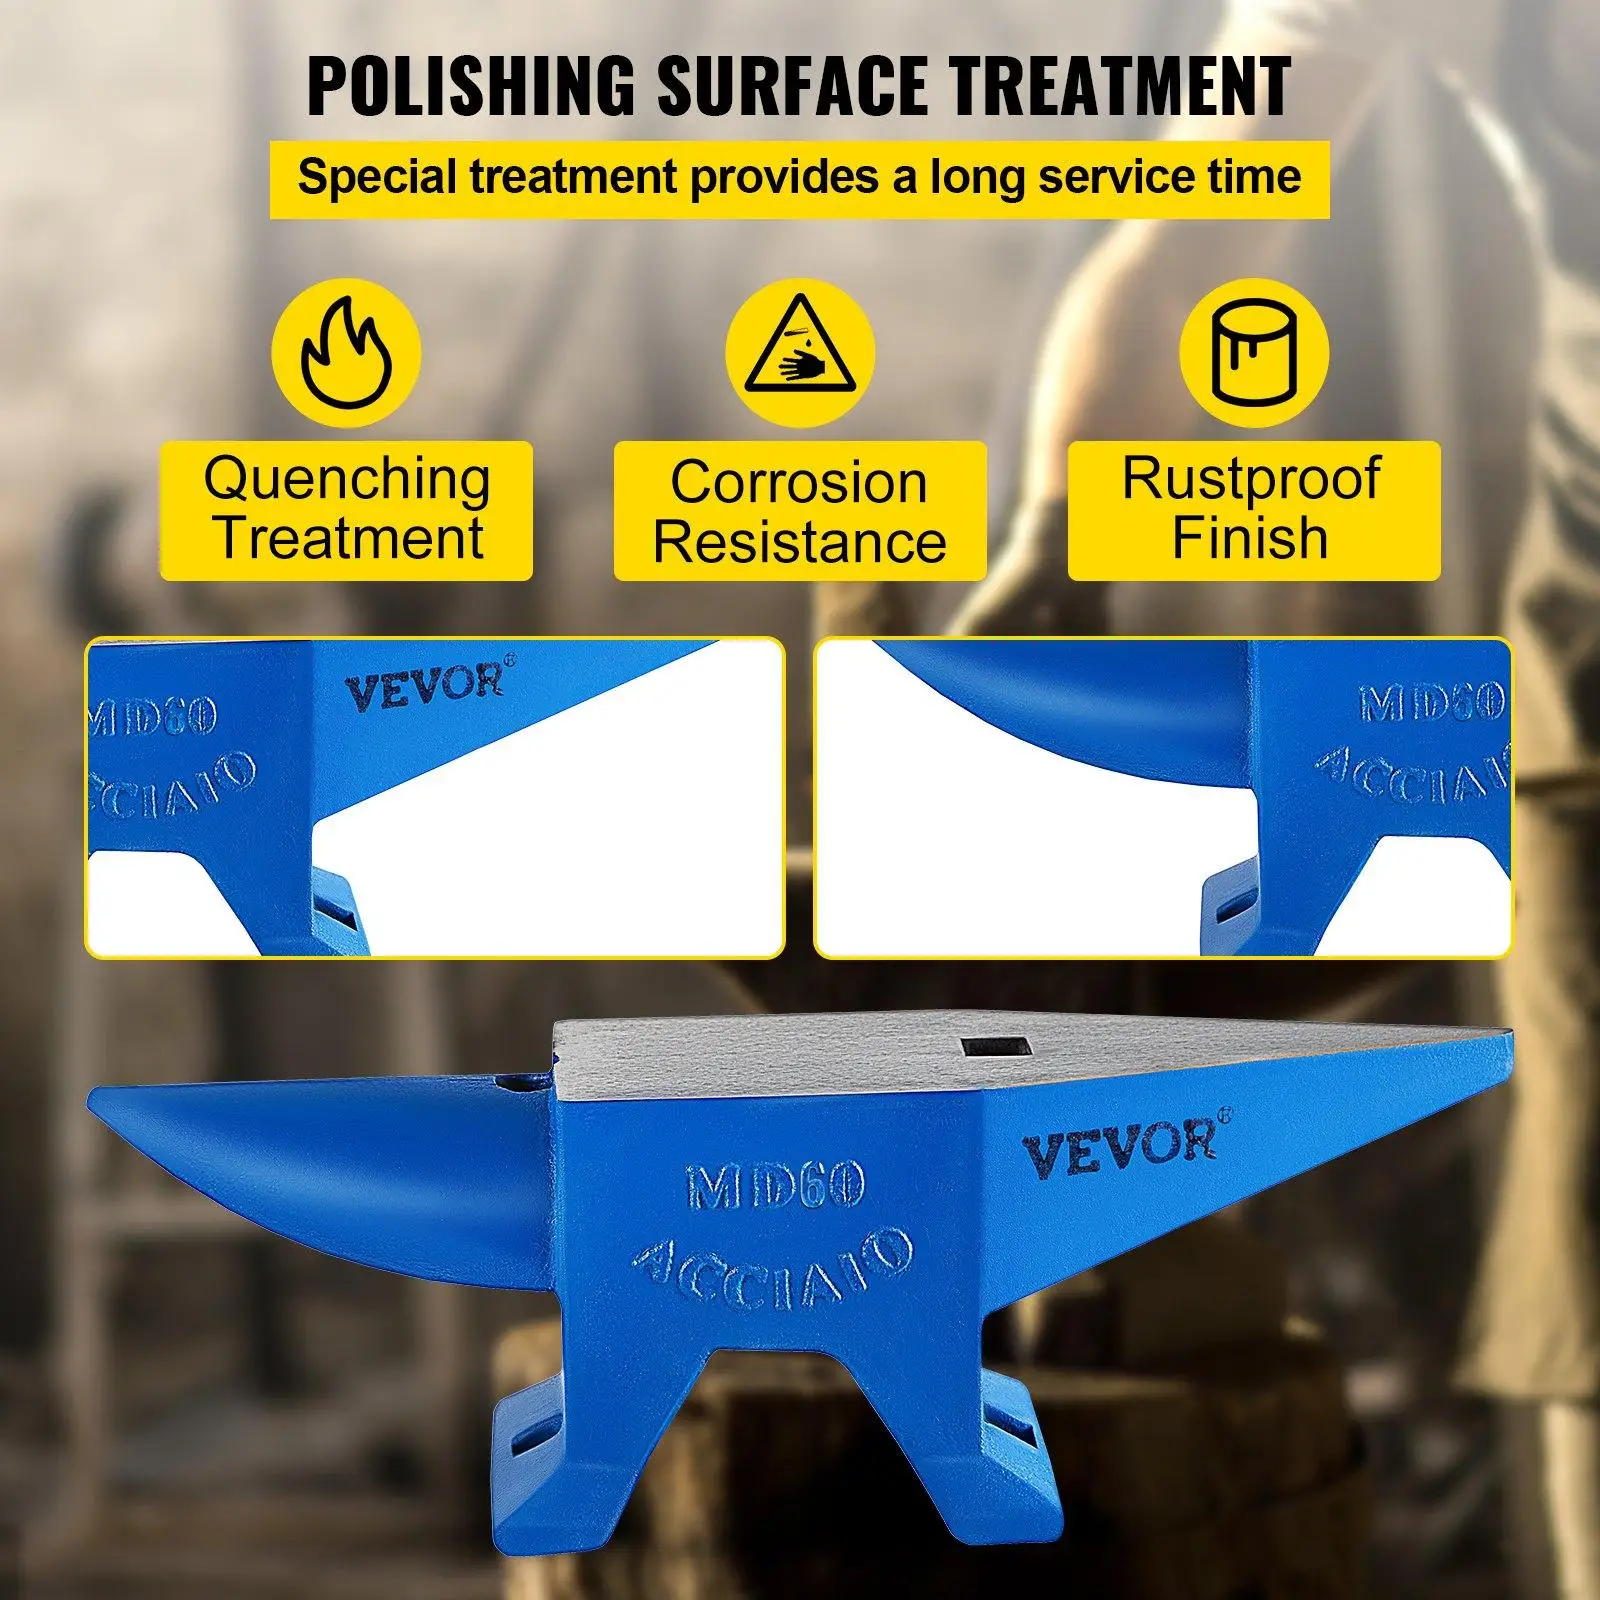 Polishing surface treatment